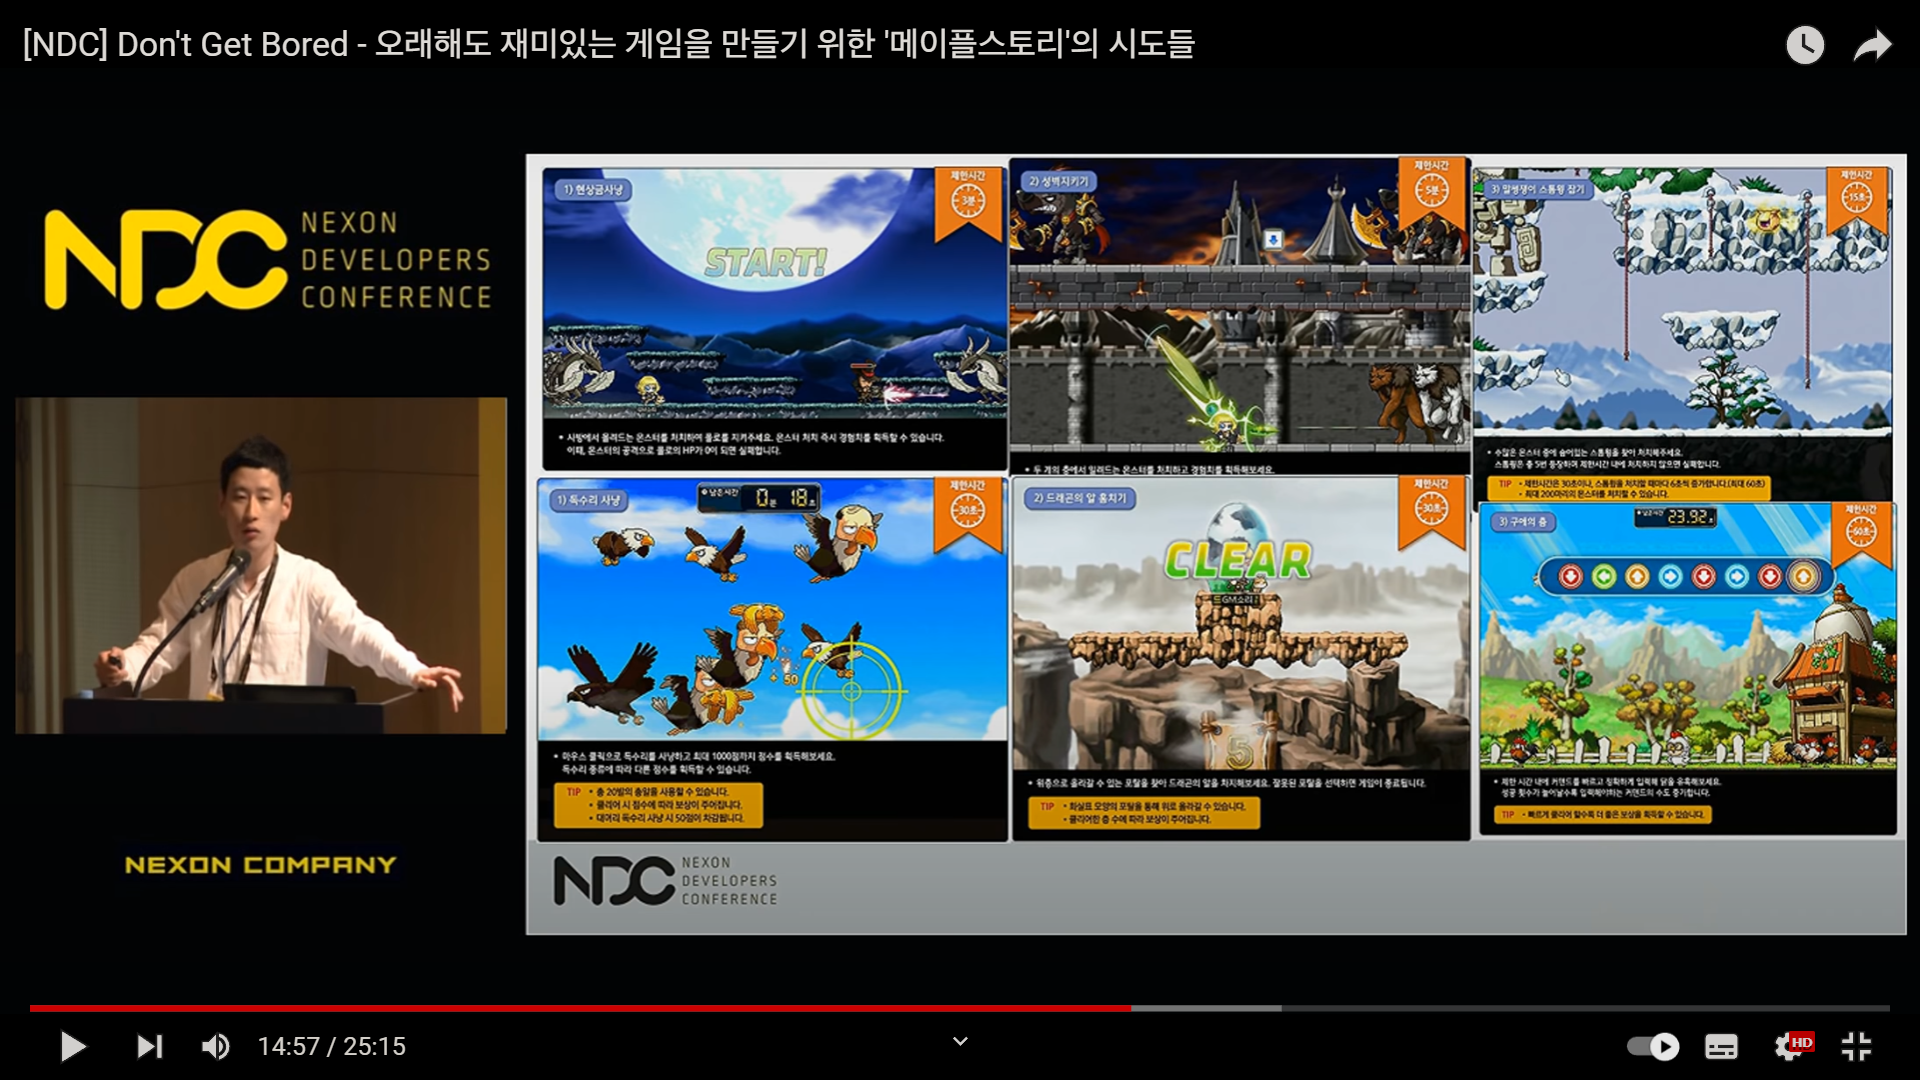 김창섭 기획 실장의 발표 (오래해도 재미있는 게임을 만들기 위한 &#39;메이플스토리&#39;의 시도들)